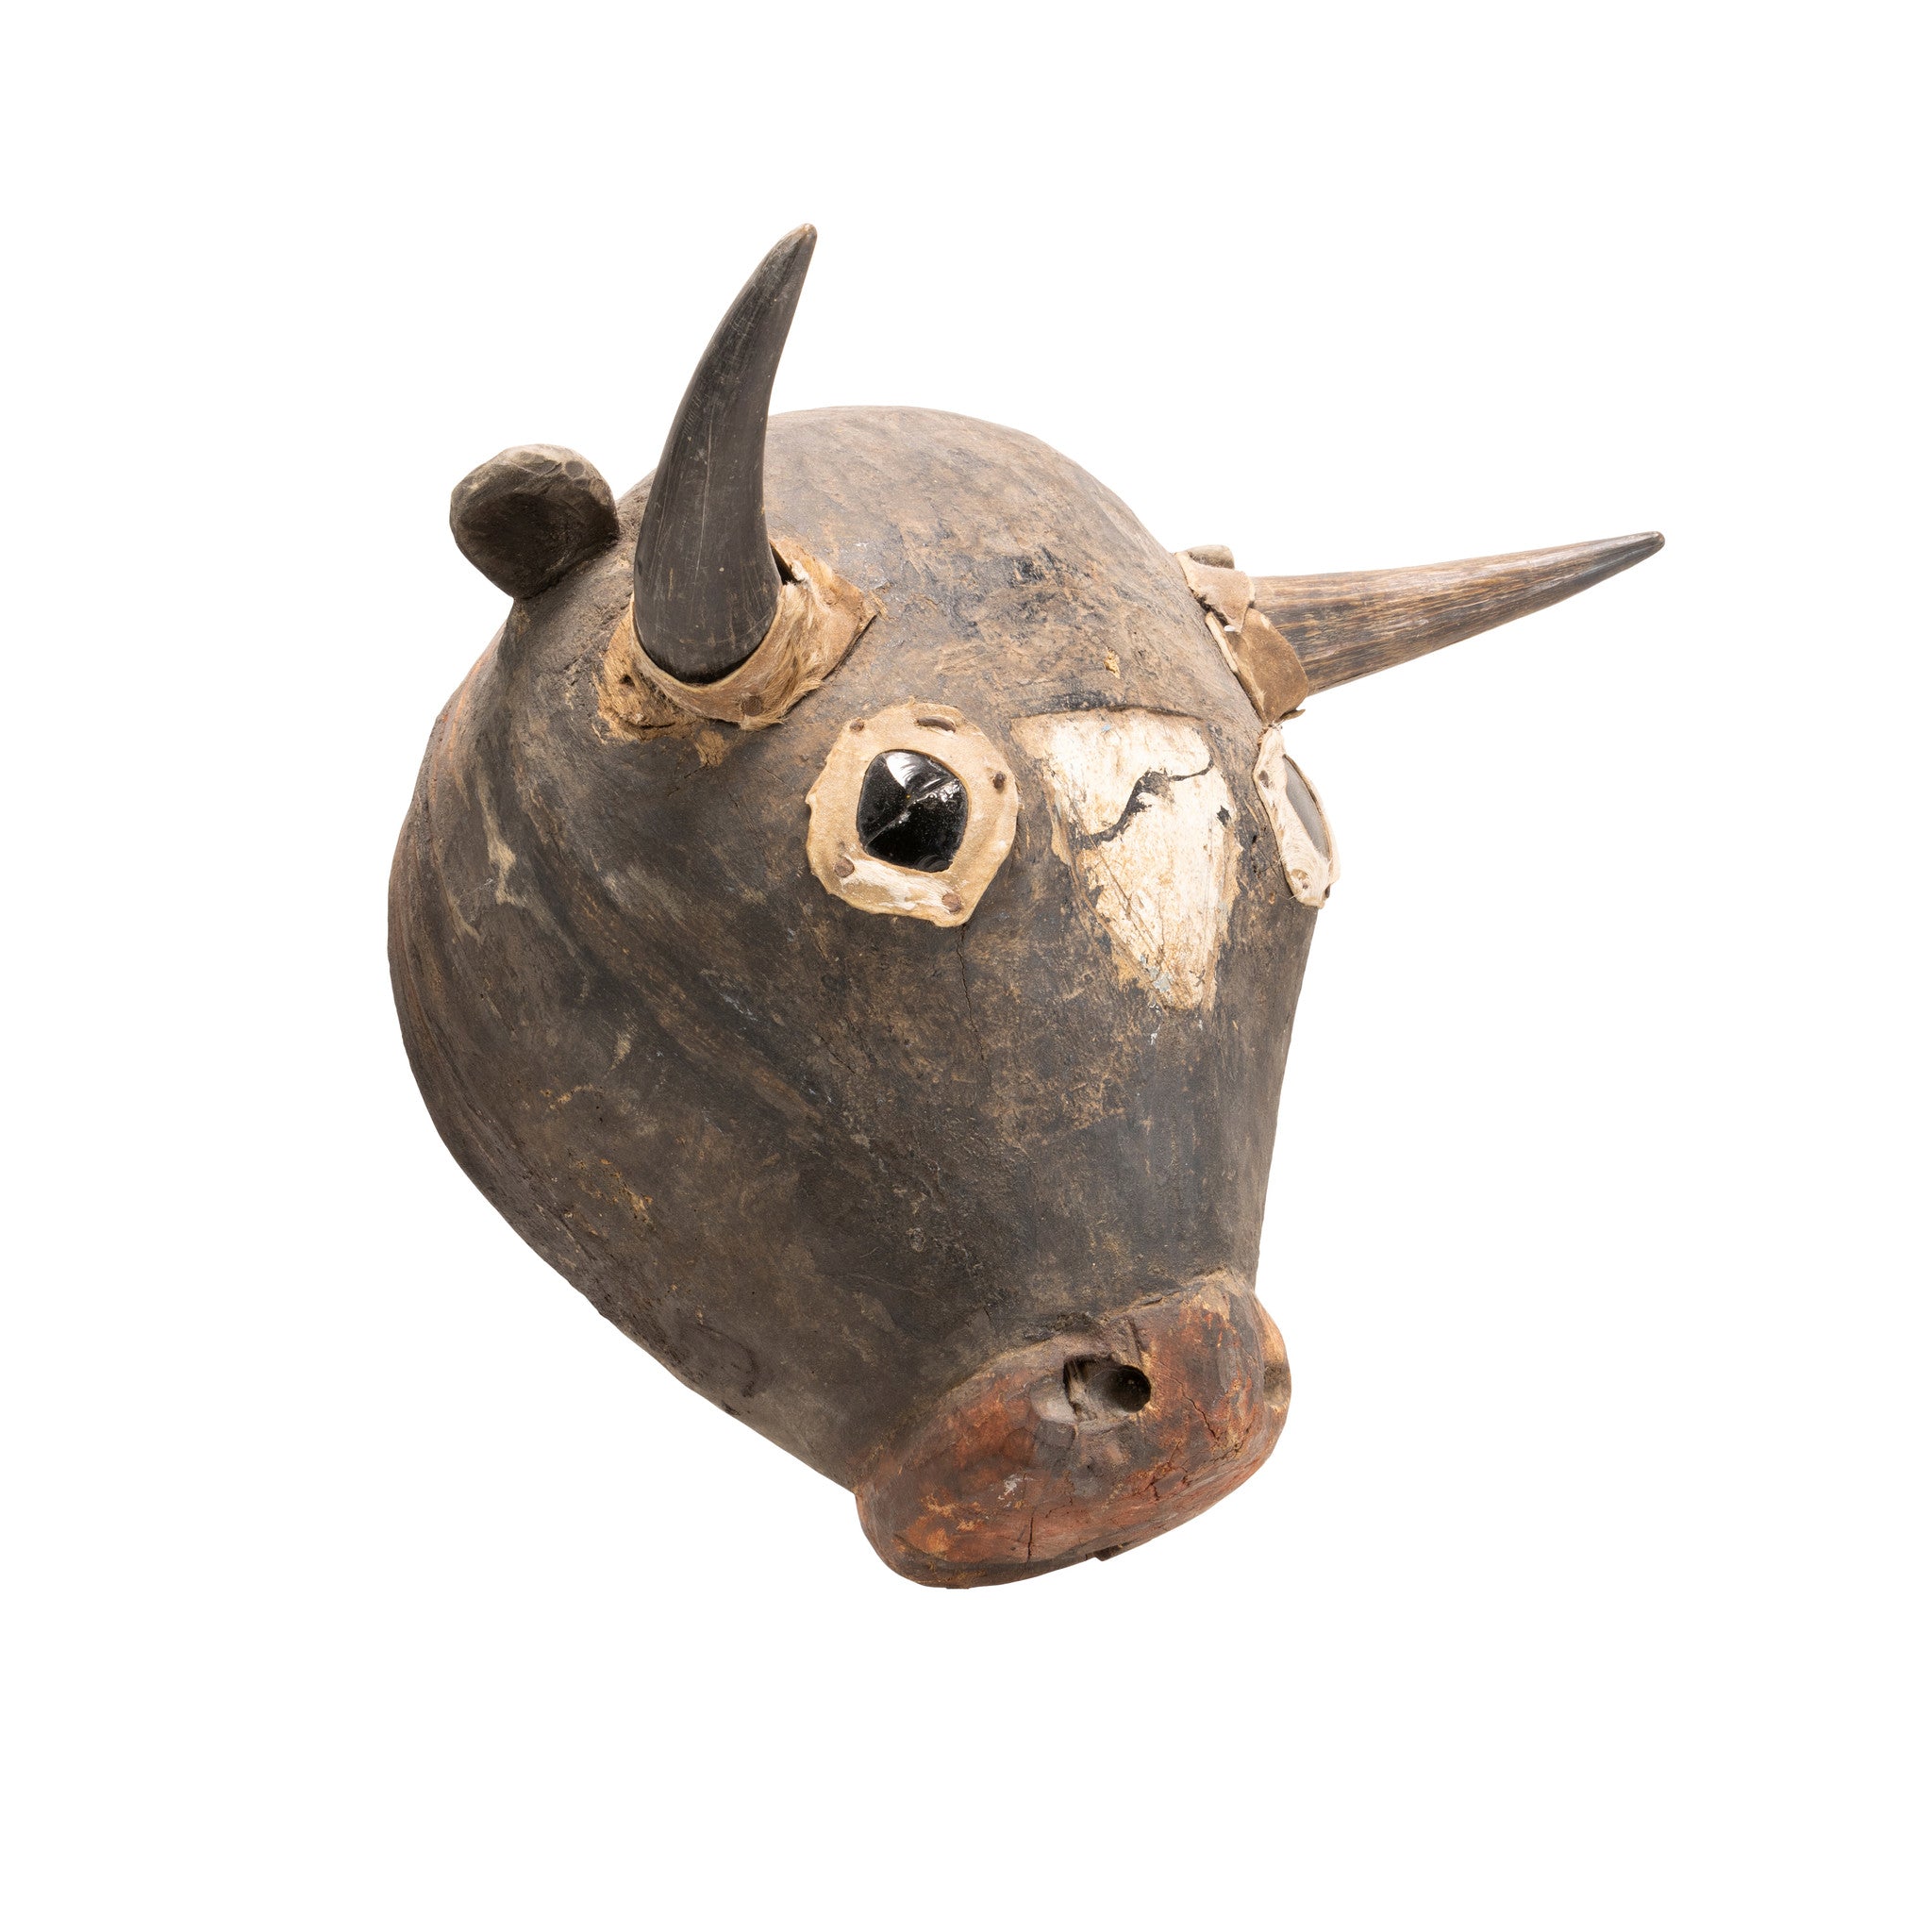 Bull Mask